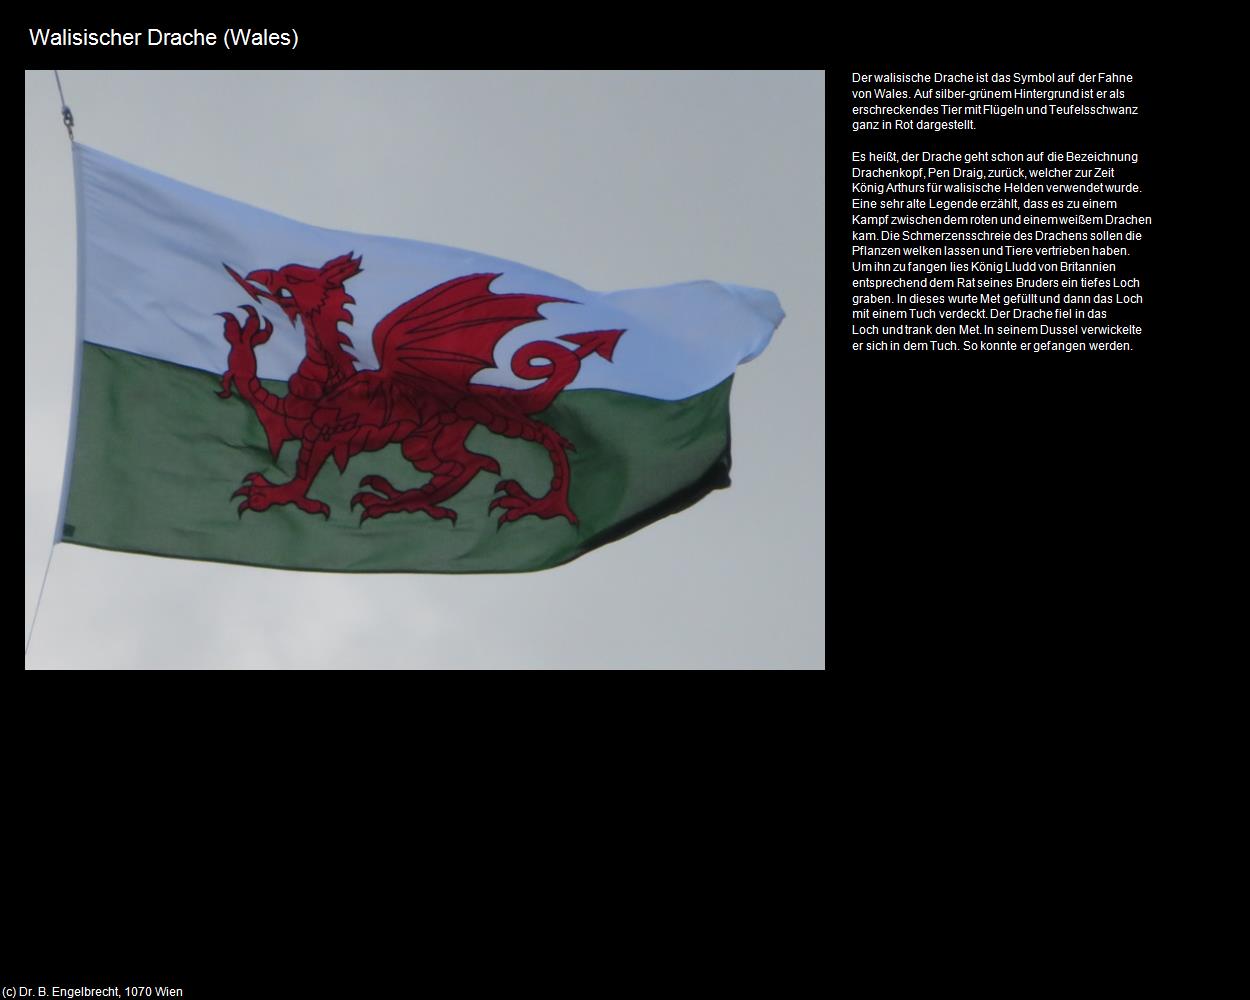 Walisischer Drache (Wales) (Harlech, Wales) in Kulturatlas-ENGLAND und WALES